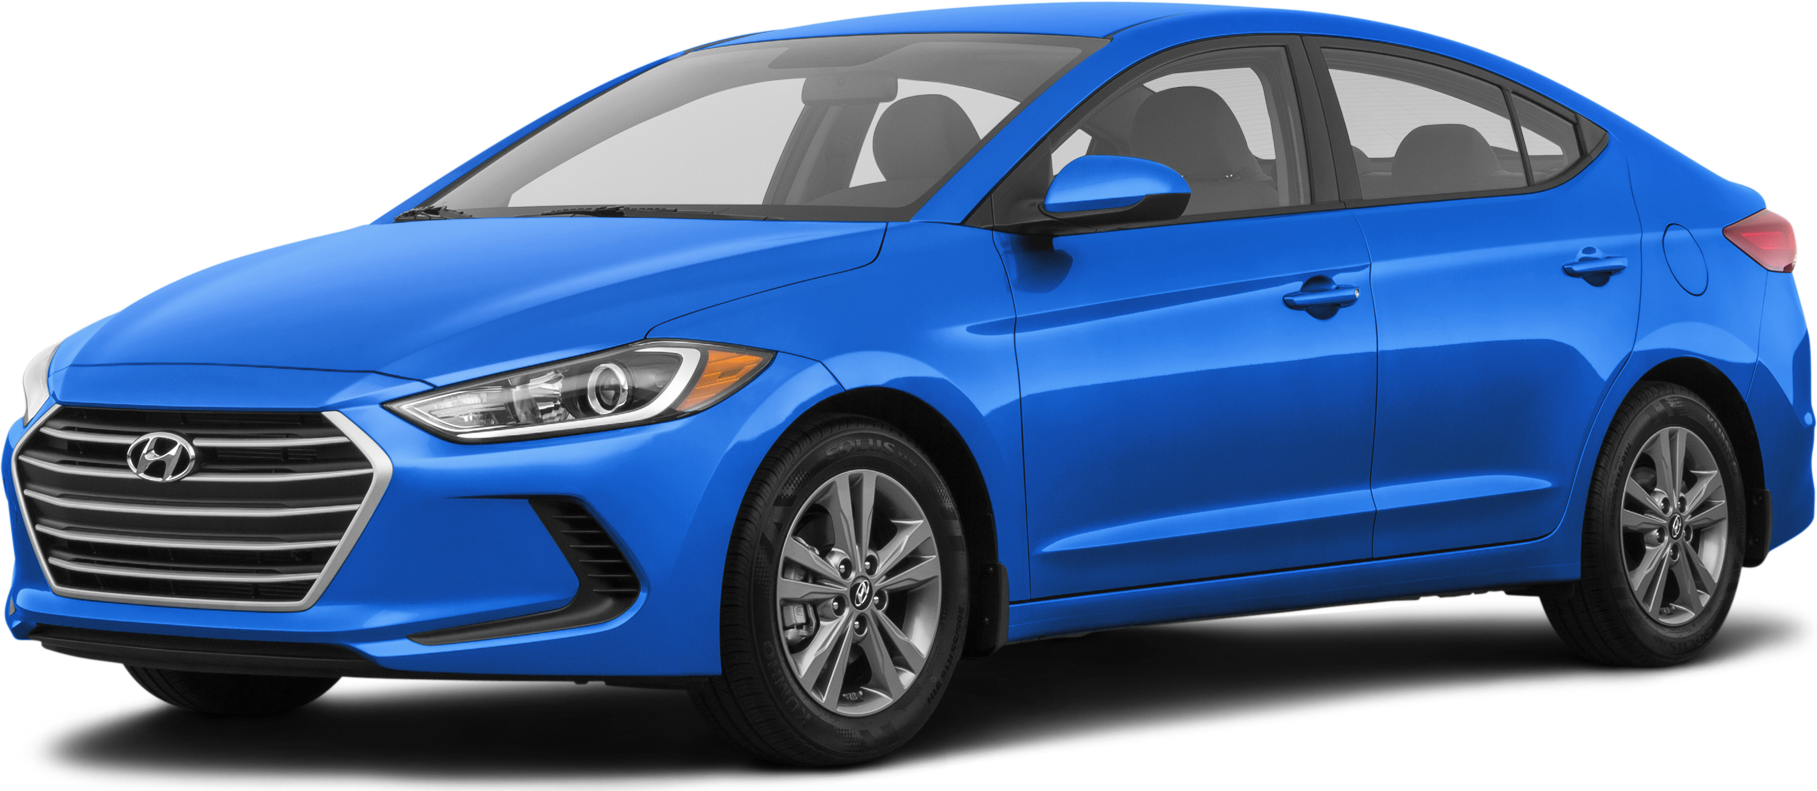 Đánh giá xe Hyundai Elantra 2018  thông số kỹ thuật